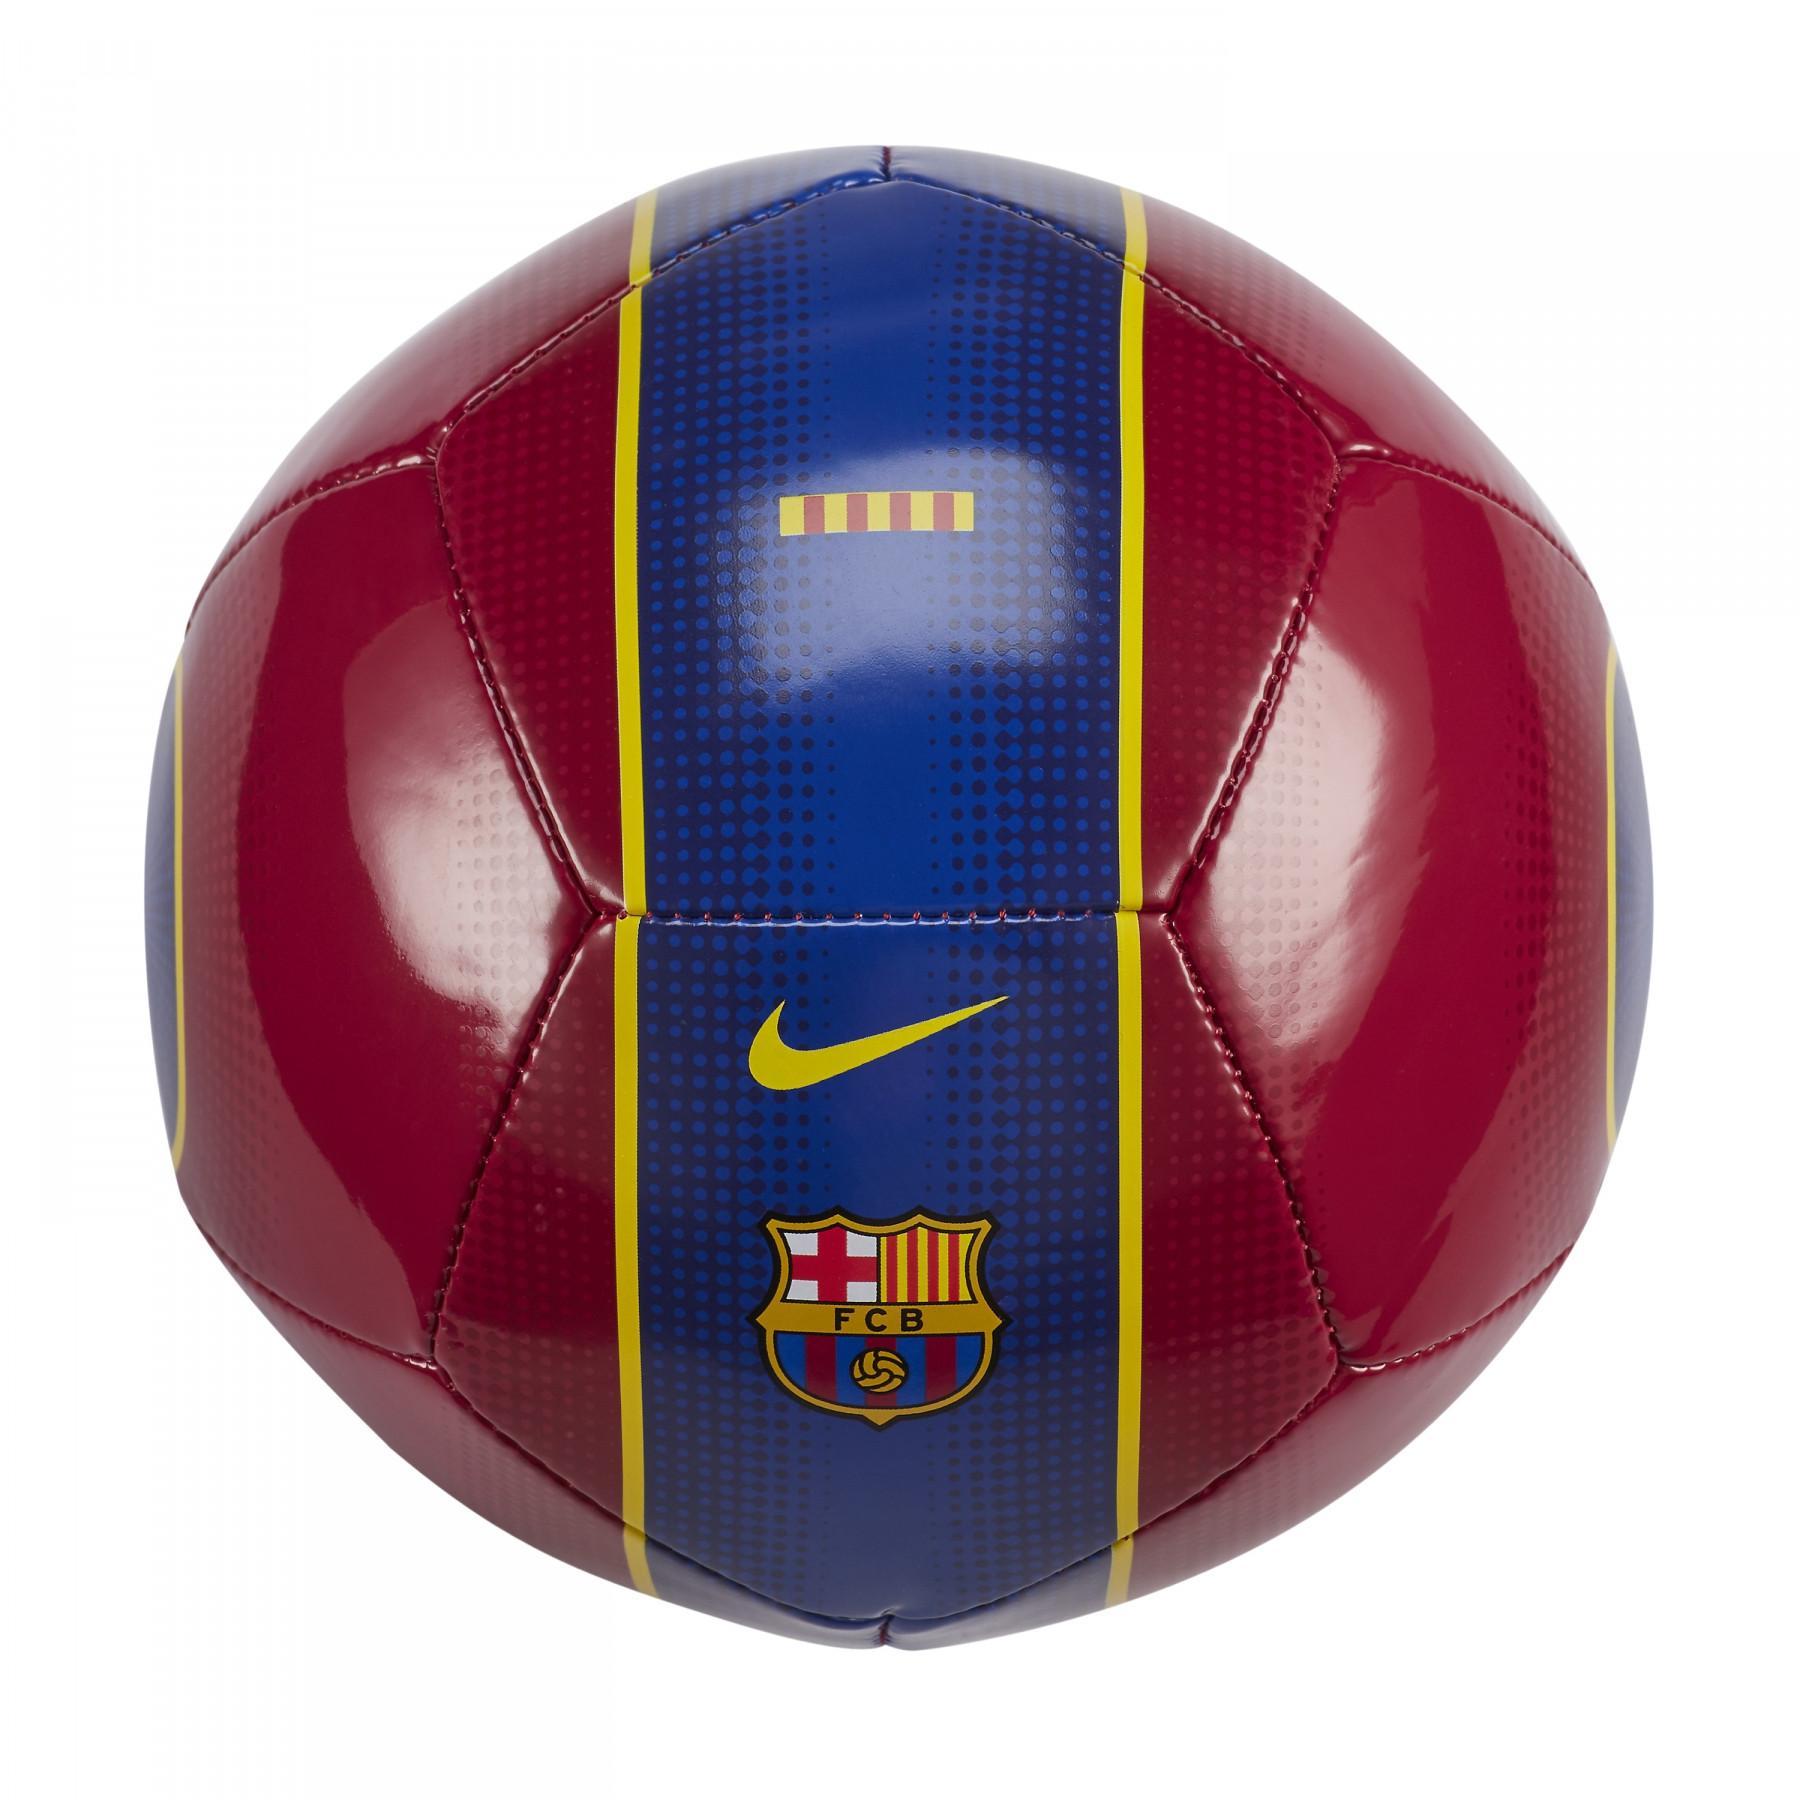 Ballon barcelona vaardigheden 2020/21